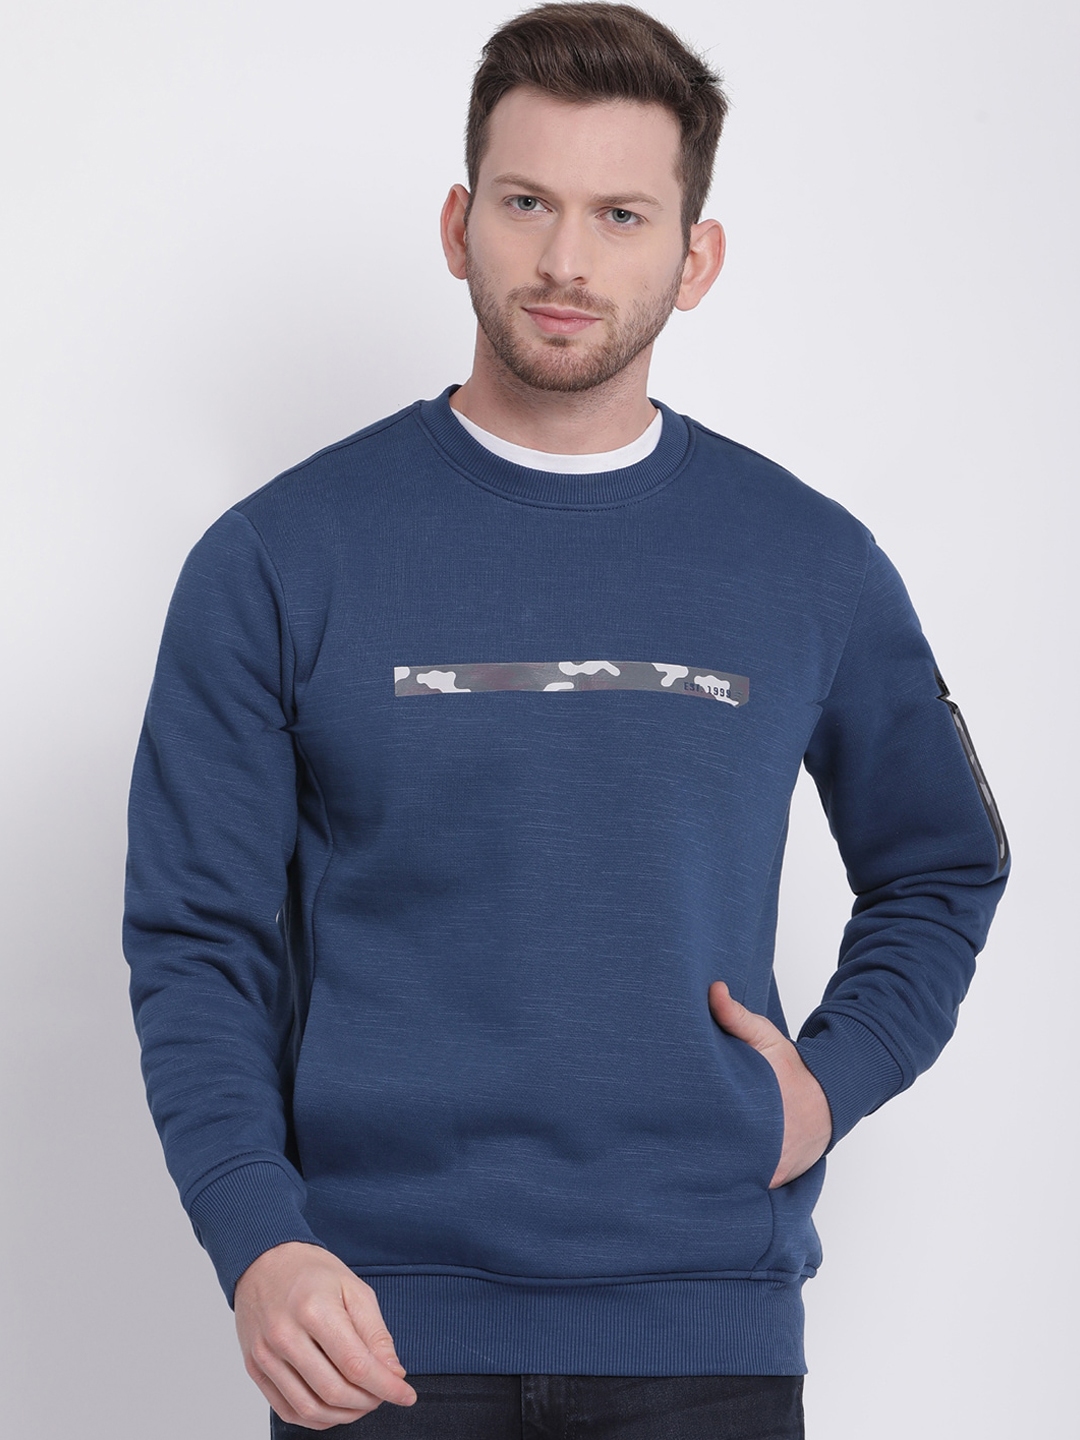 Buy T Base Men Navy Blue Solid Sweatshirt - Sweatshirts for Men ...